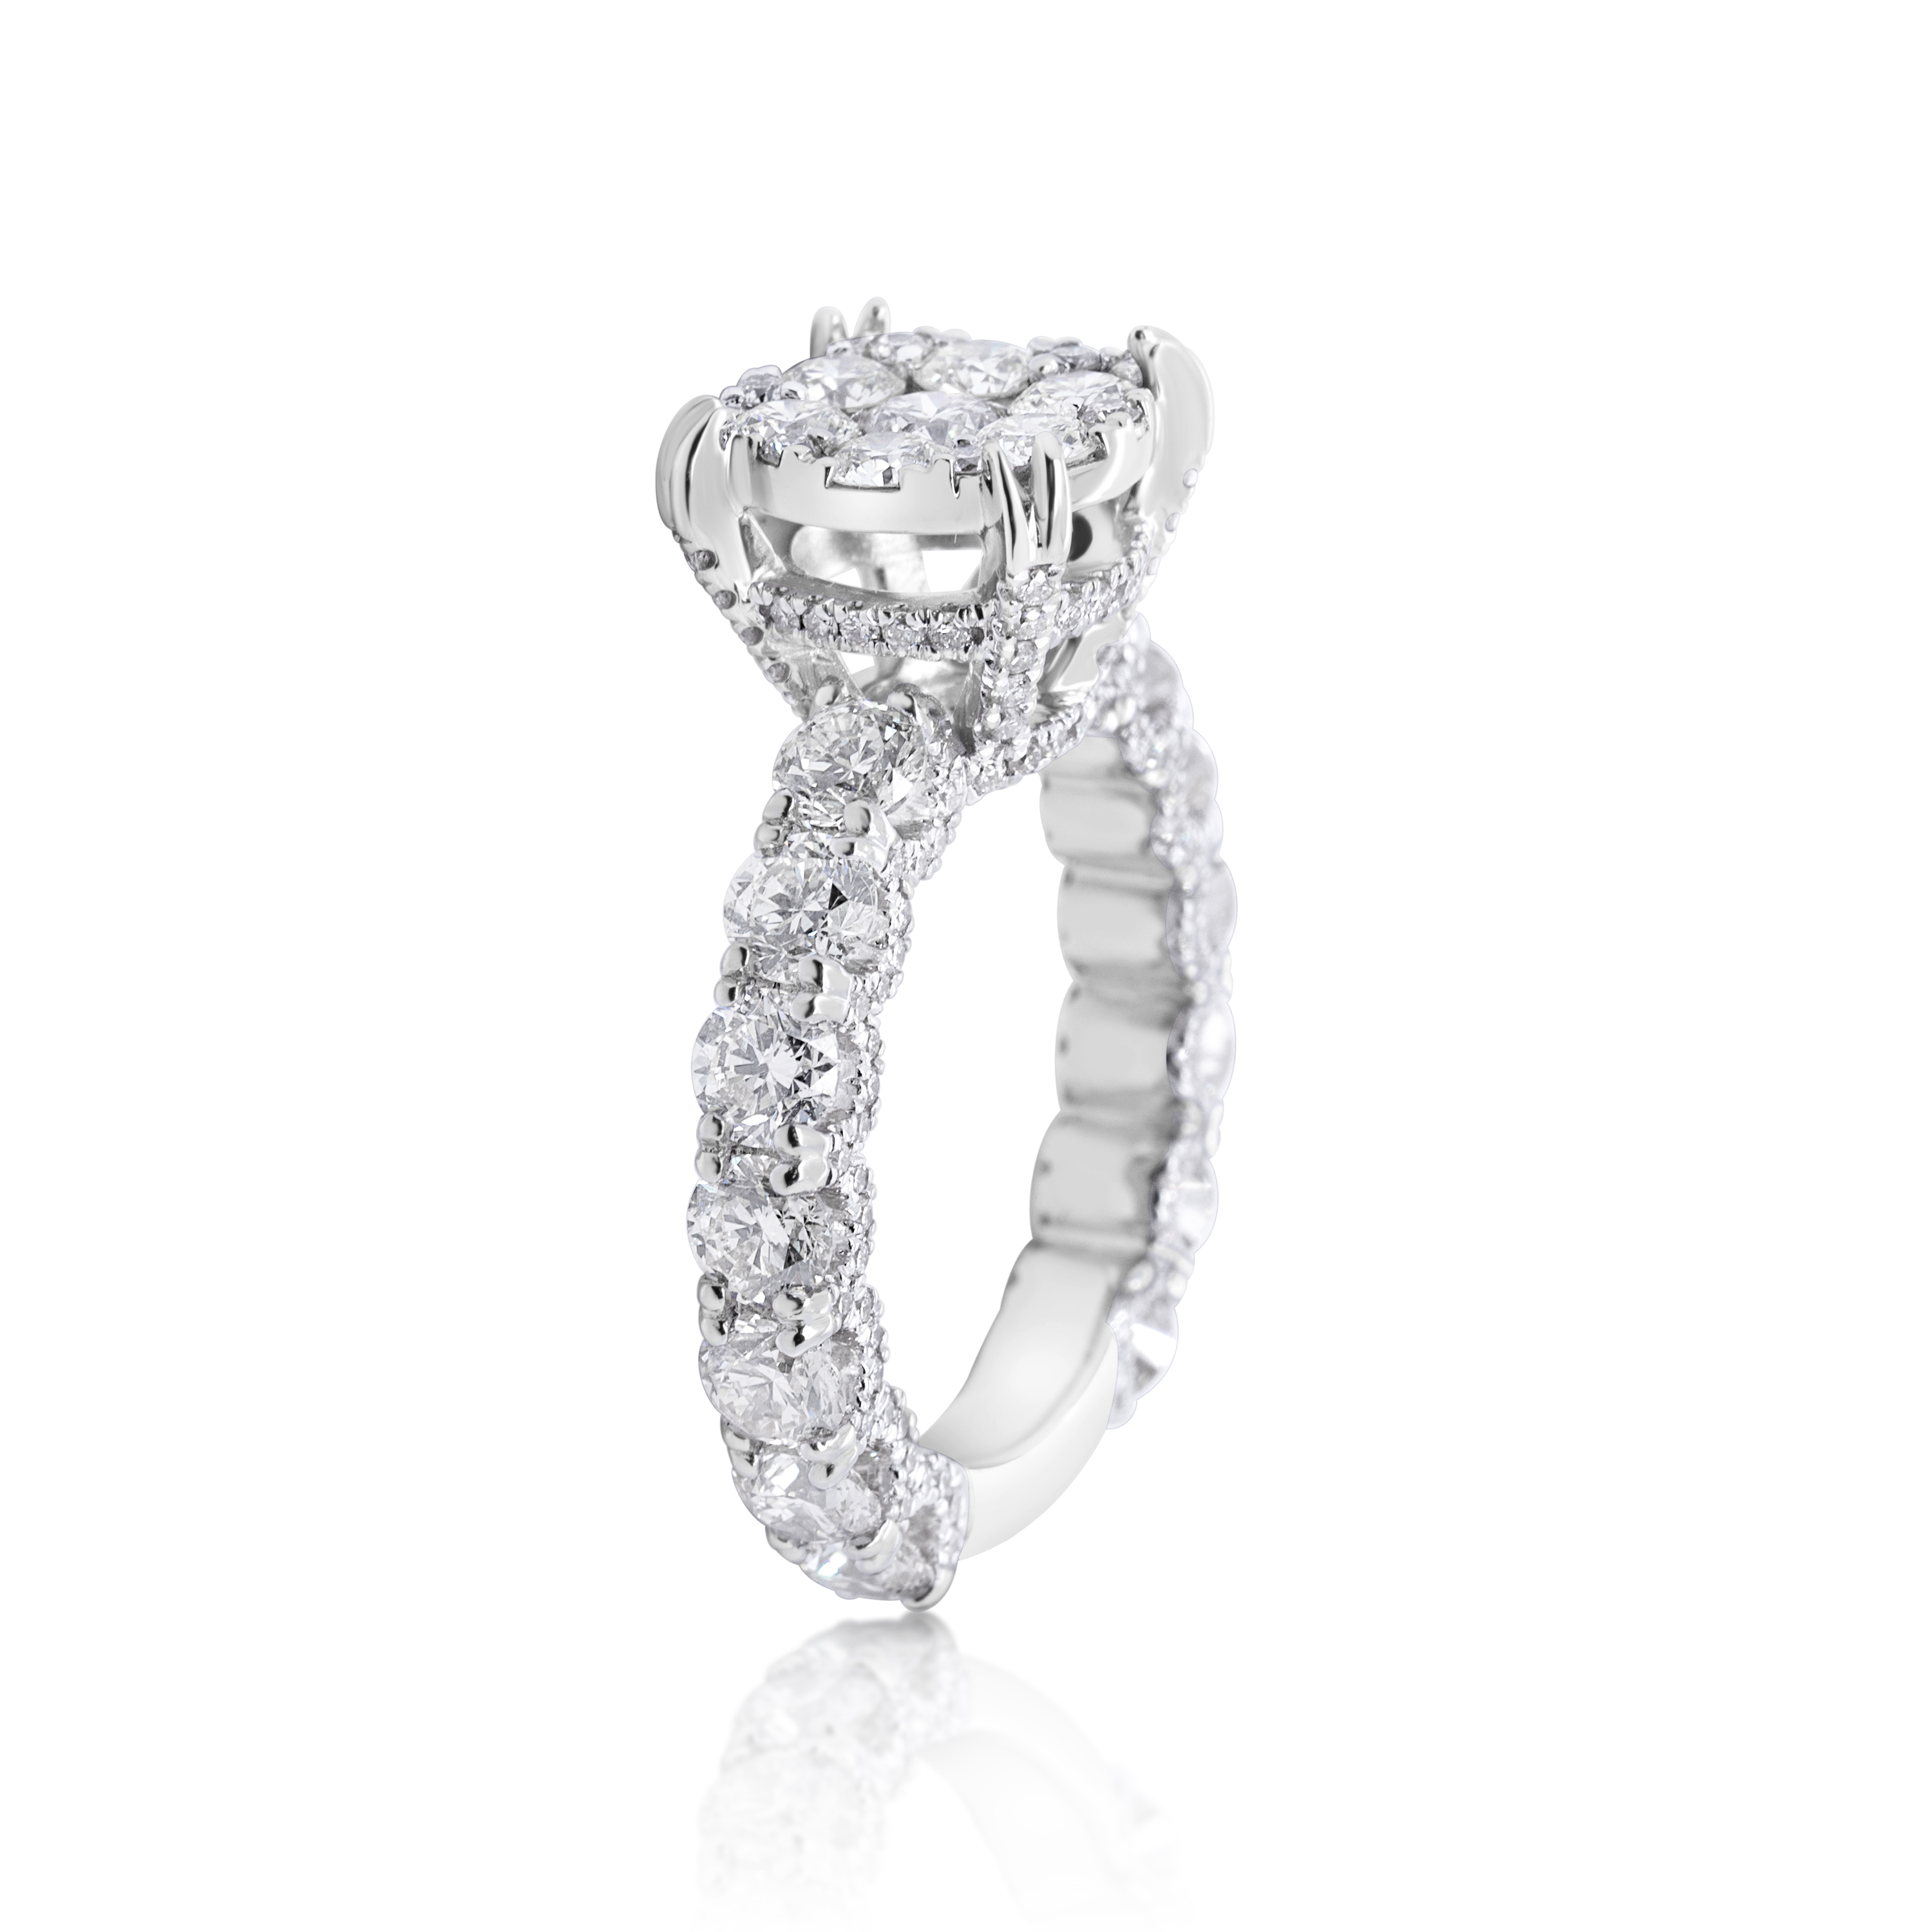 Diamond Ring 4.30 ct. 14K White Gold